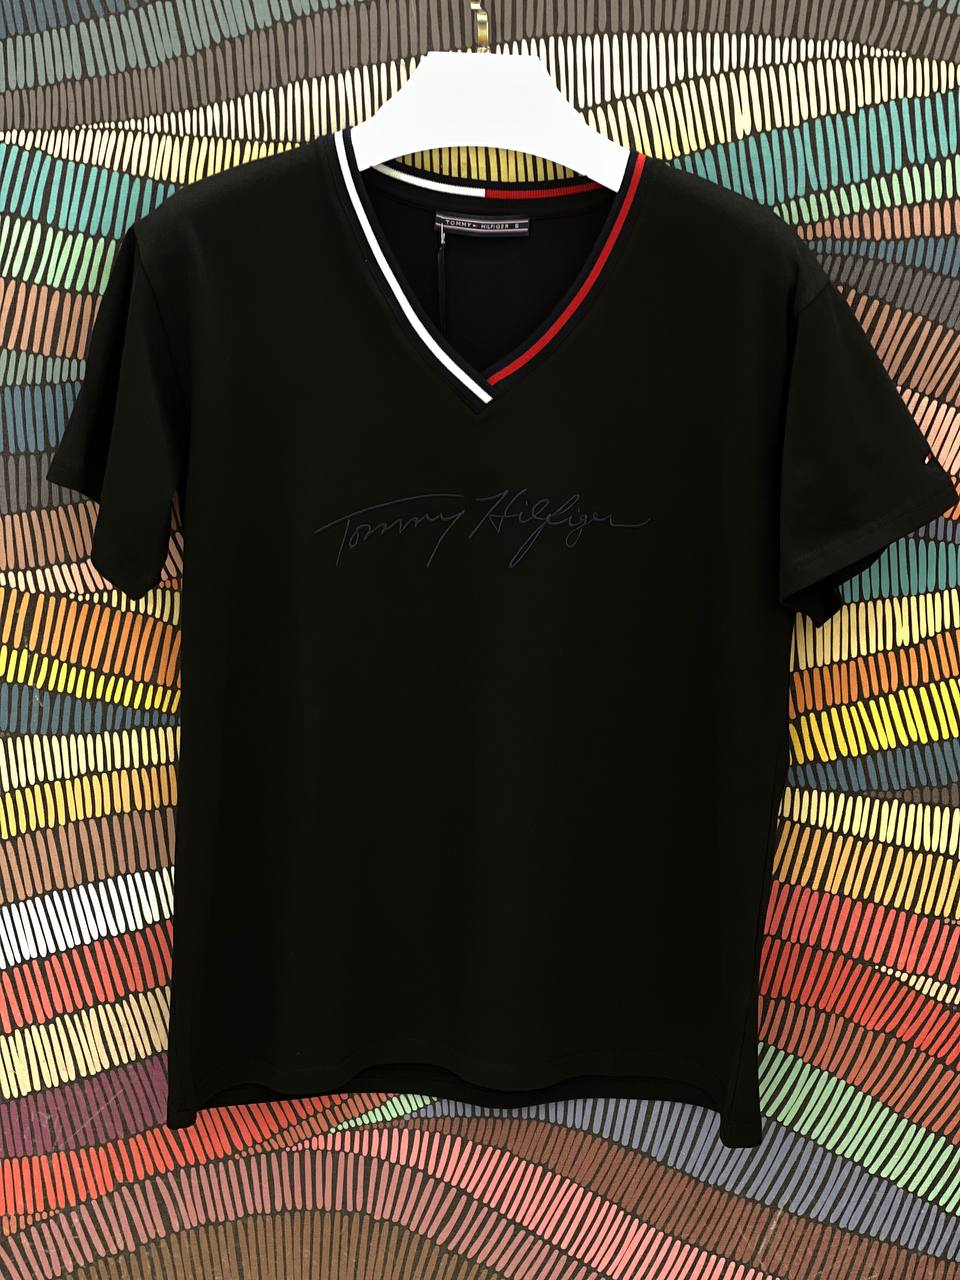 Tommy Hilfiger V-Neck Slimfit Blue -Black Tshirt For Women